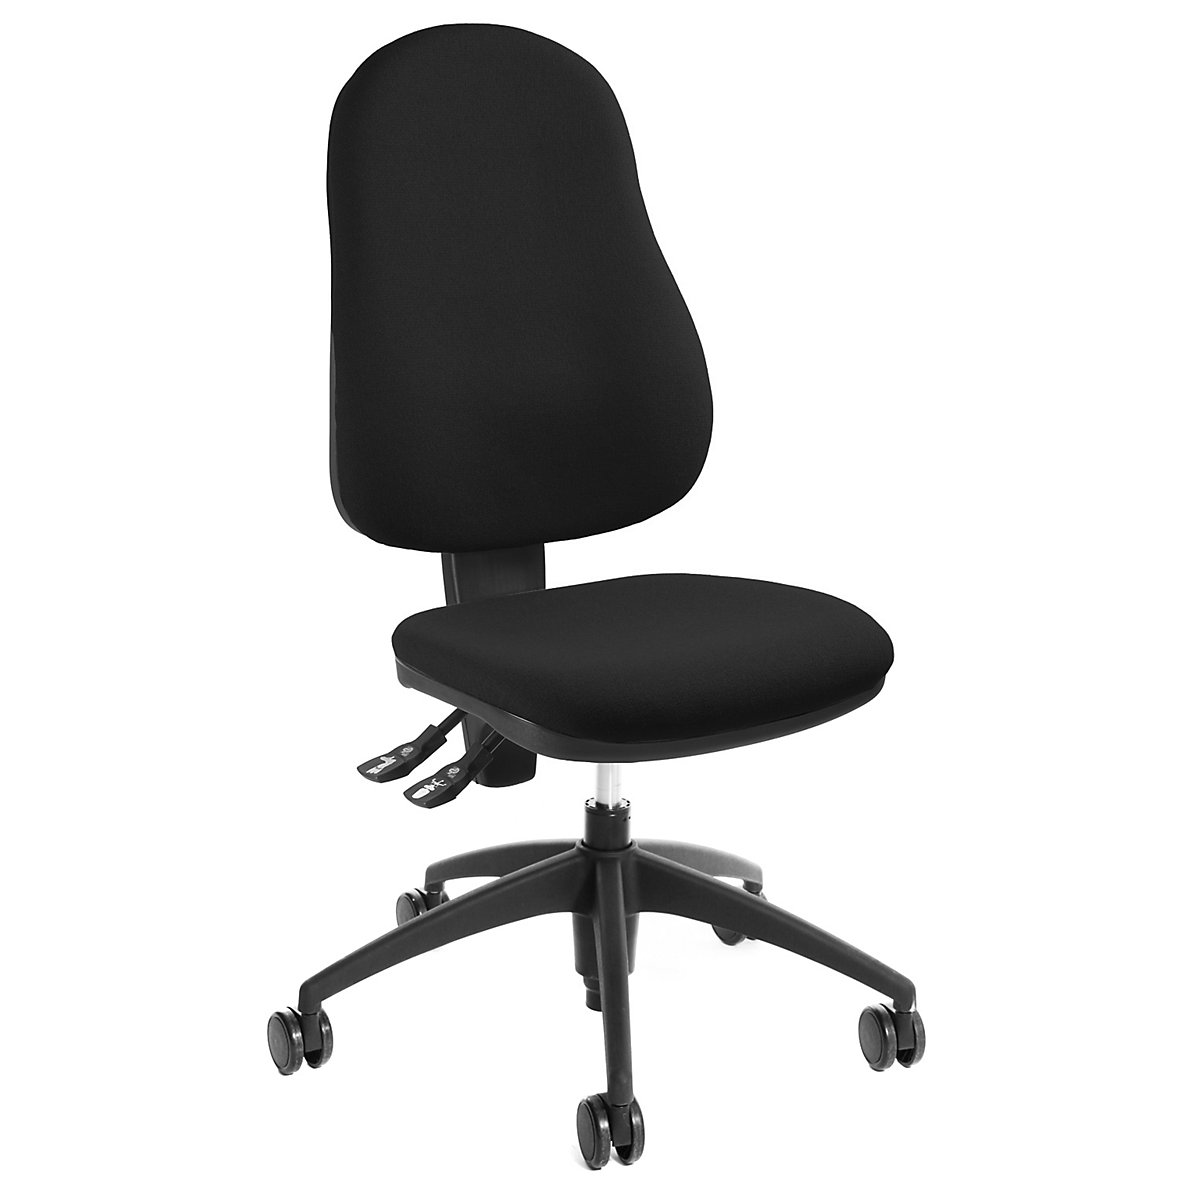 Udobna okretna stolica, visina naslona za leđa 520 mm – eurokraft pro, mehanika za stalni kontakt, koritasto sjedalo, u crnoj boji-5